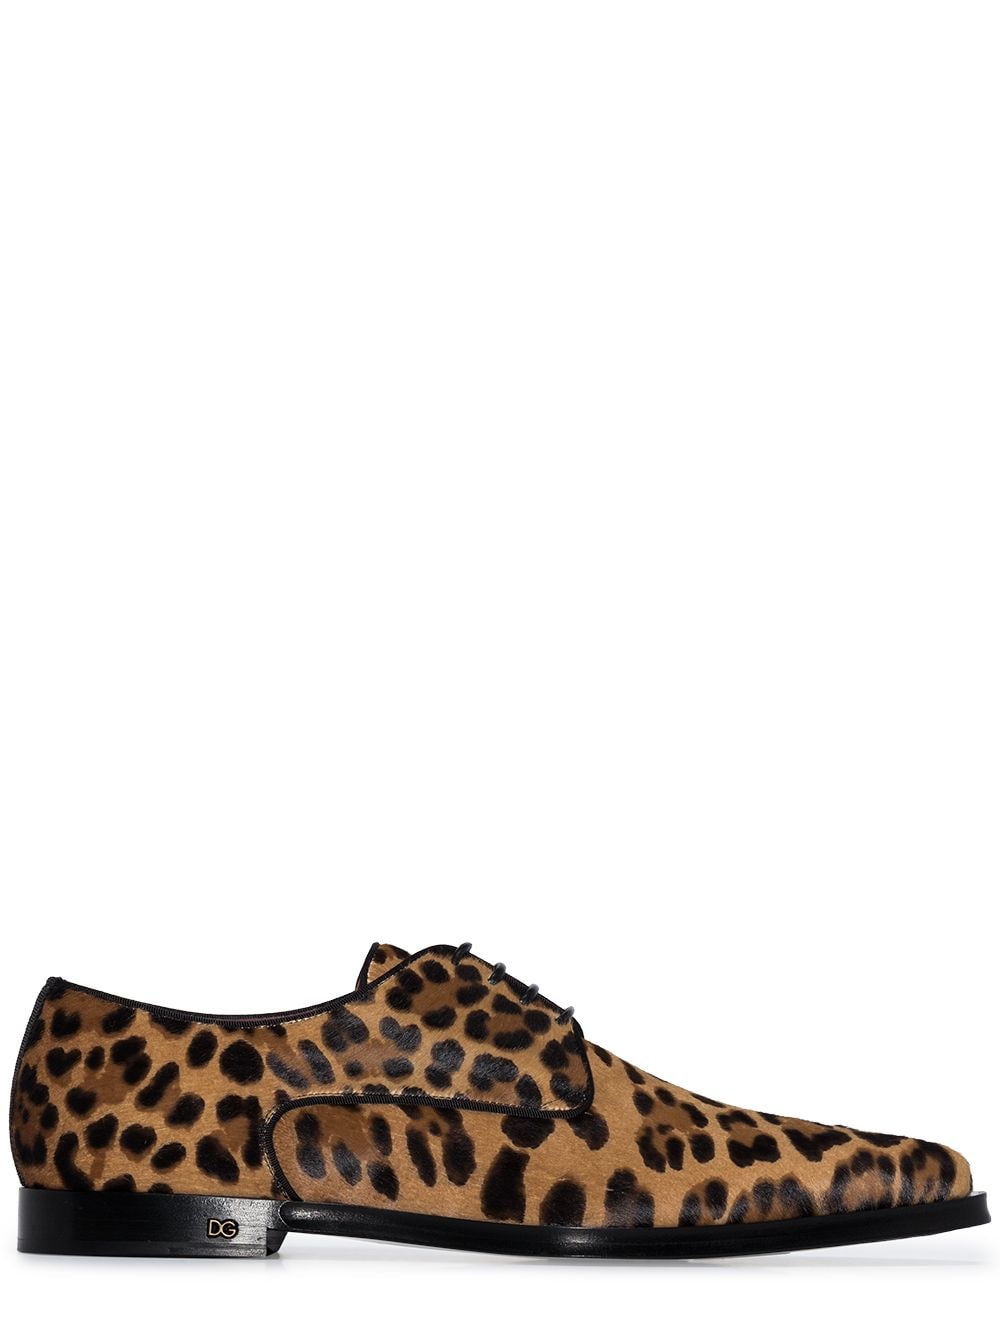 Dolce & Gabbana фактурные туфли Millenials с леопардовым принтом